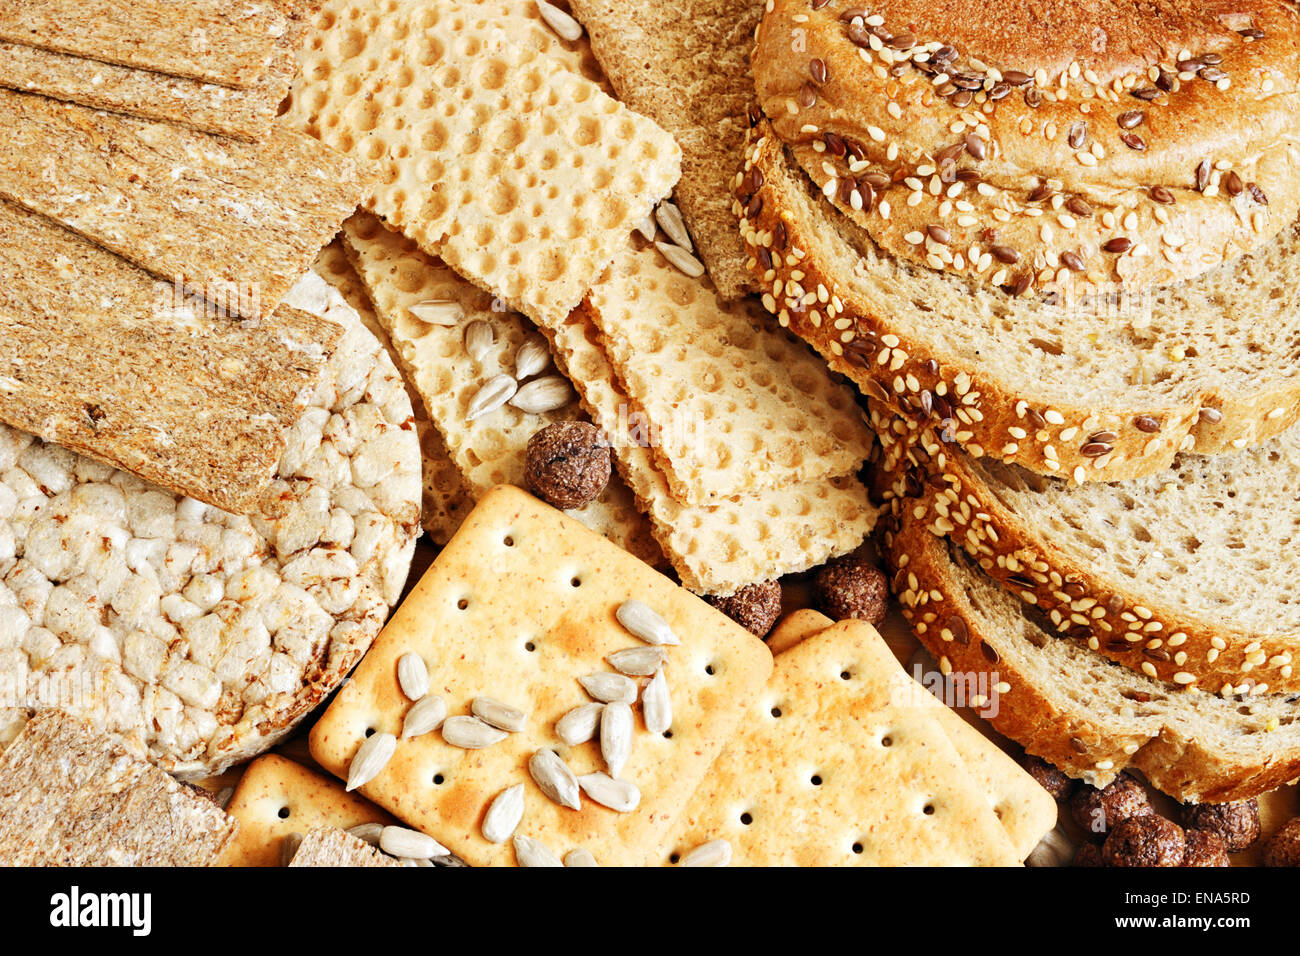 Productos a base de granos de cereales para una dieta saludable Foto de stock